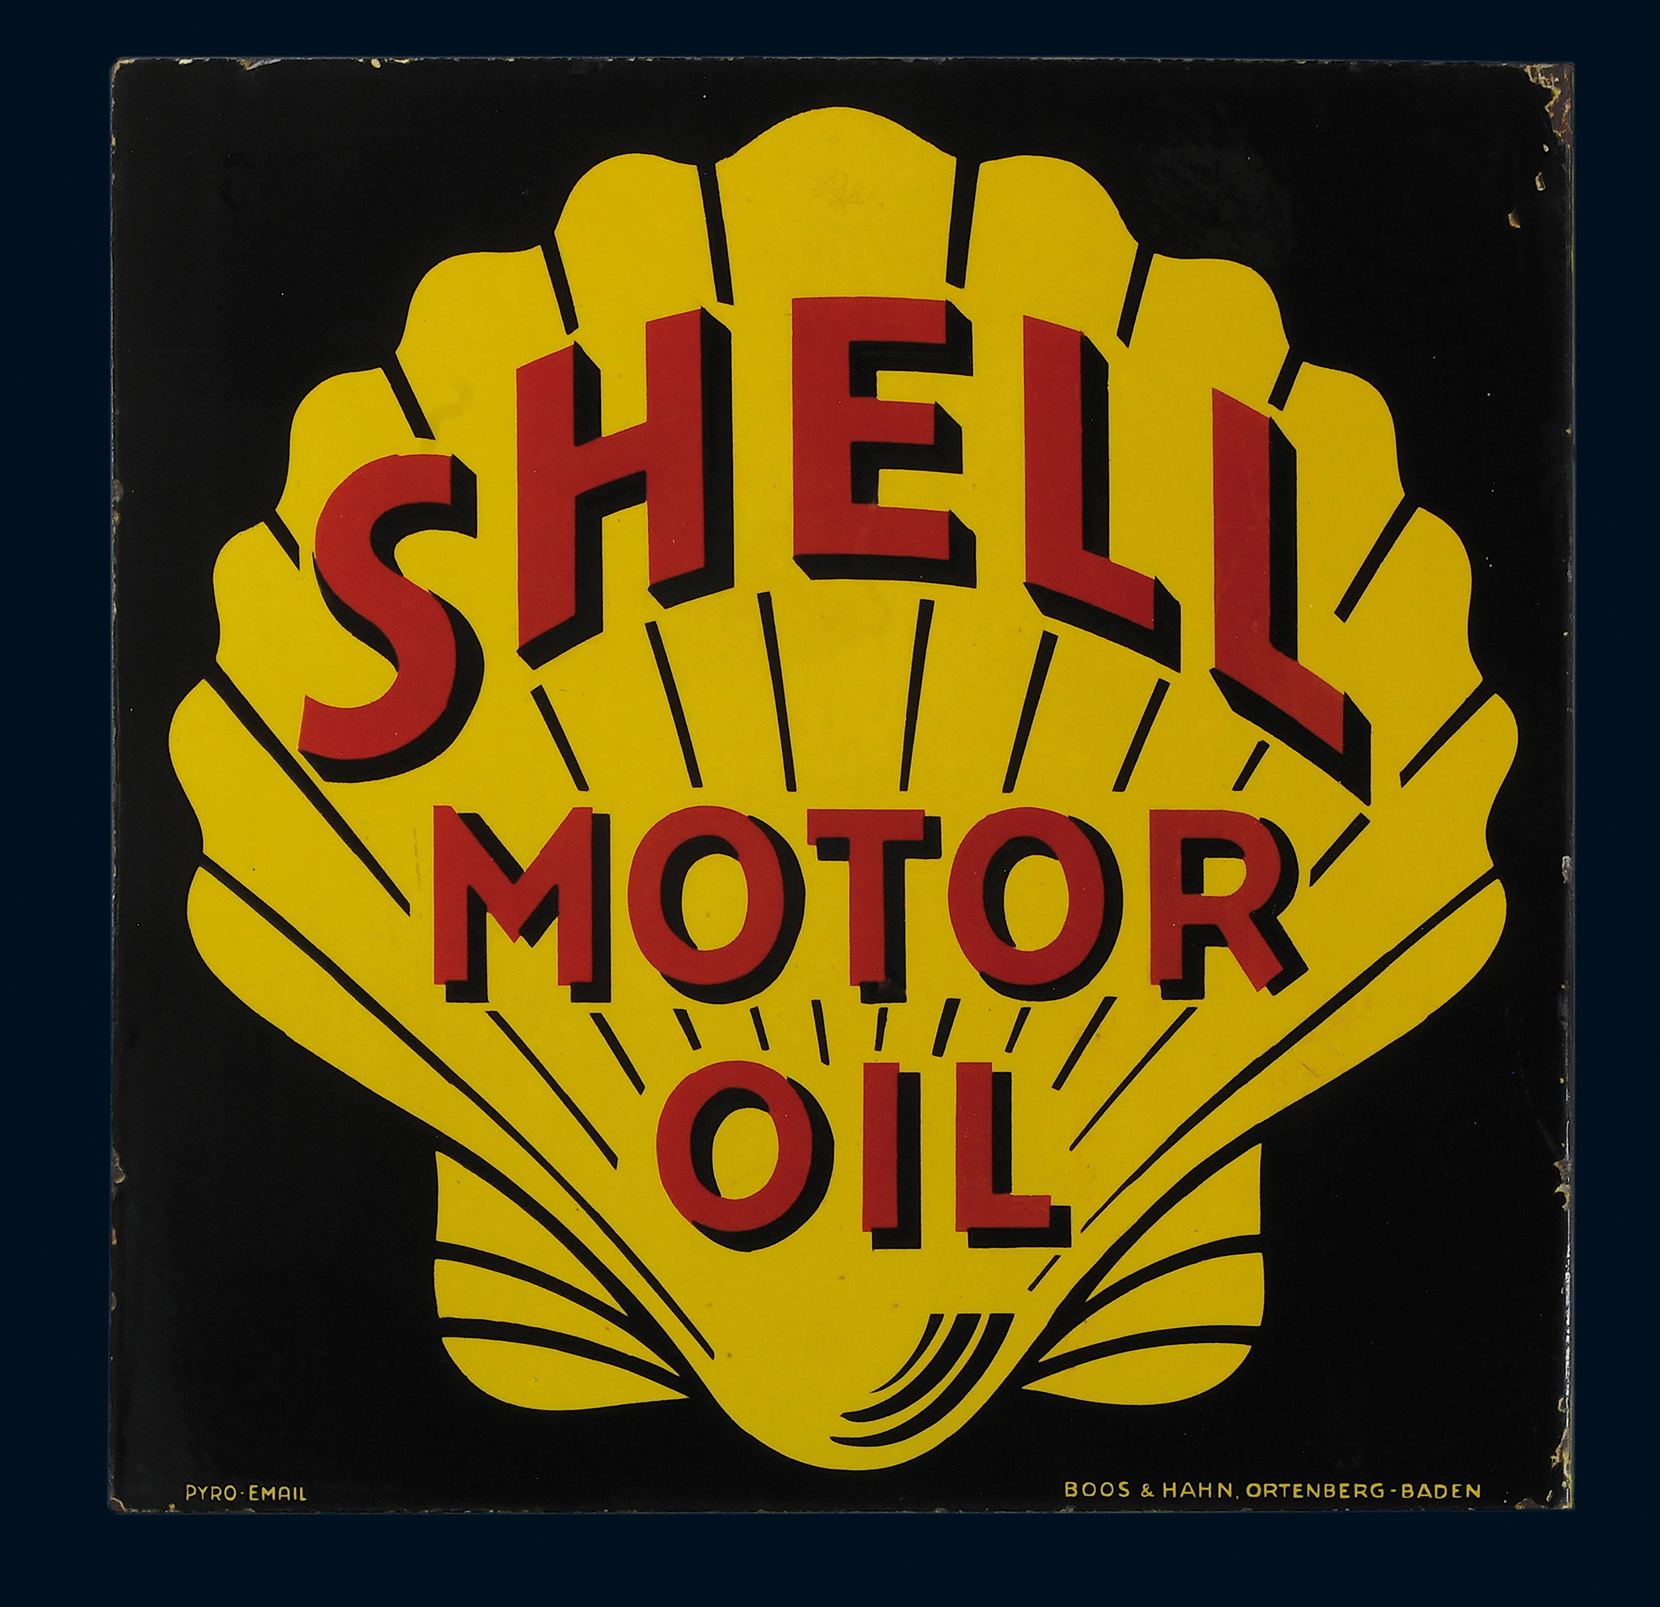 Shell Motor Oil Ausleger - Image 2 of 4